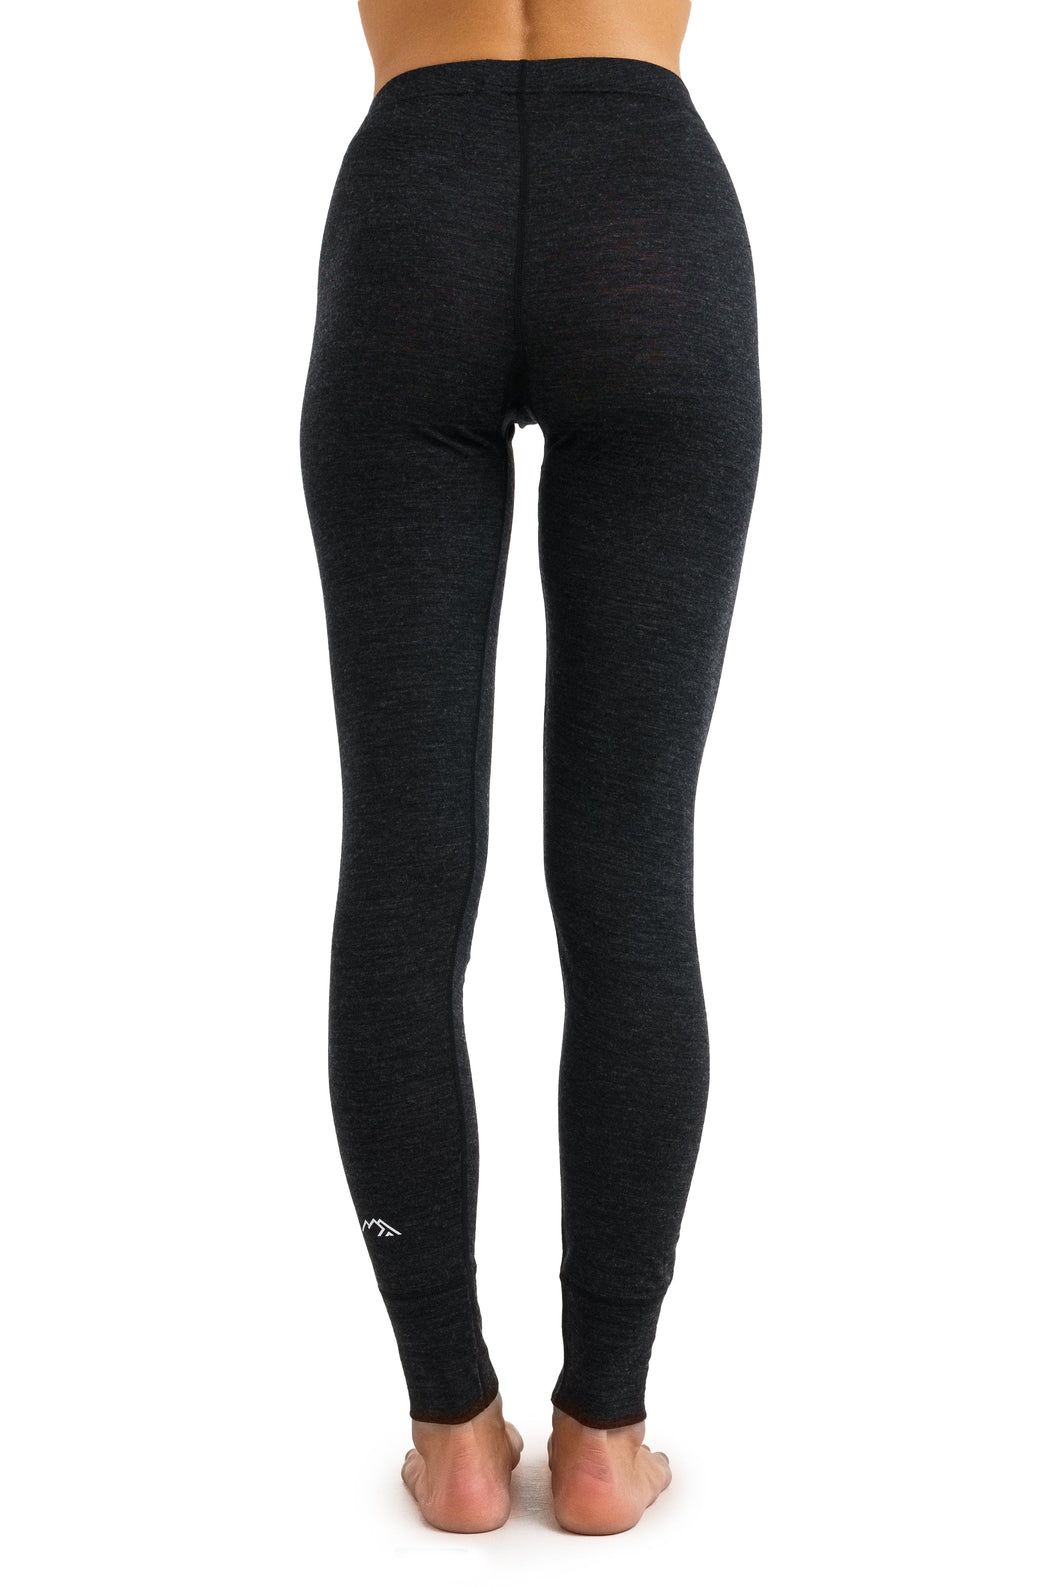 Women's Merino Pants 165 Heathered Black